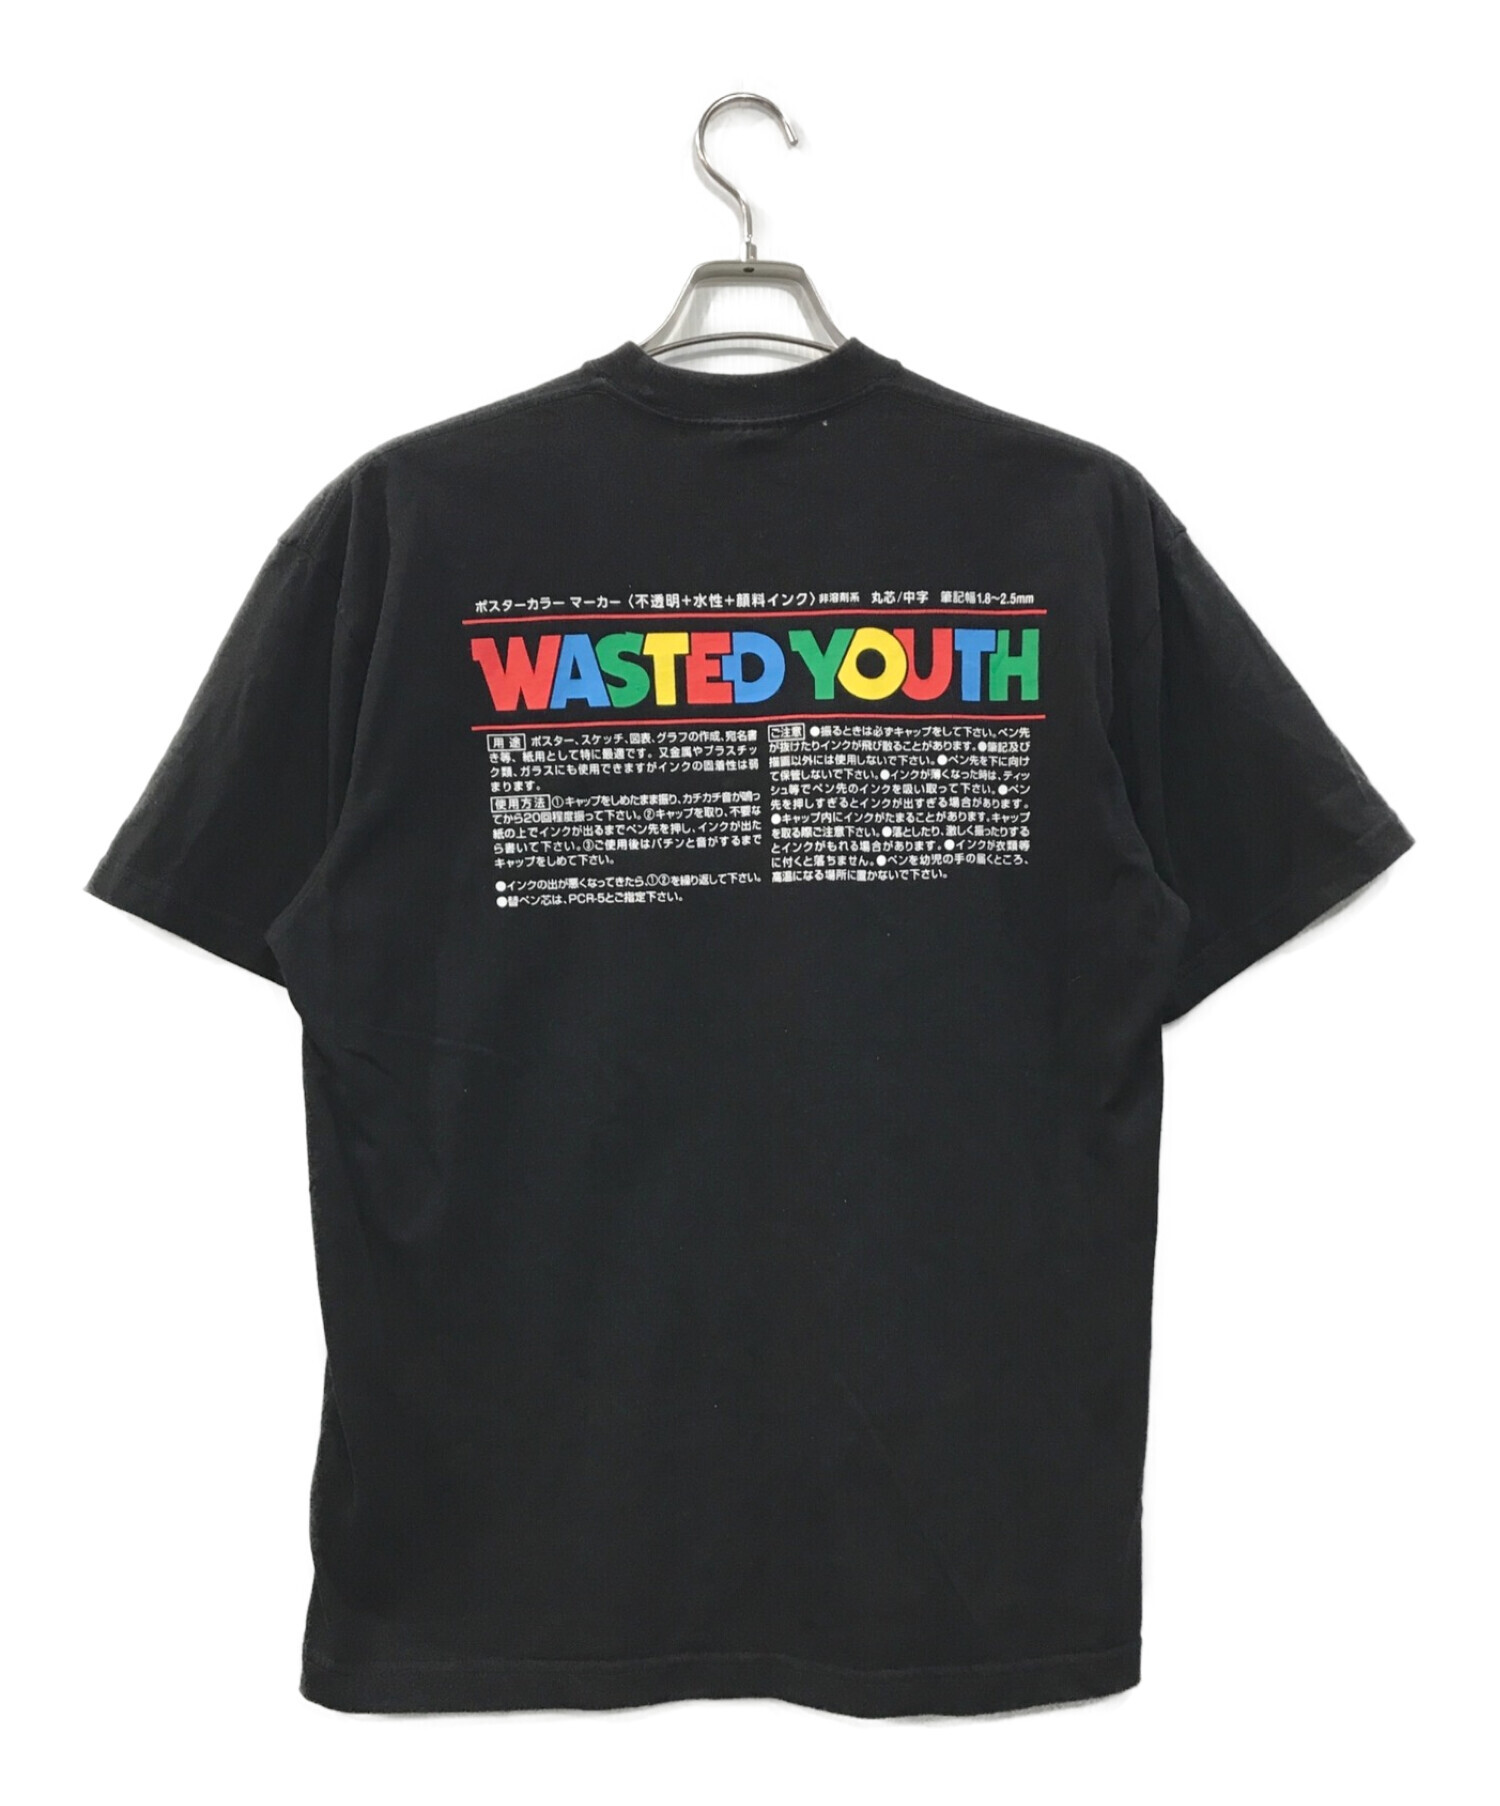 Tokion Wasted Youth ポスカ Tシャツ VERAY Mサイズ